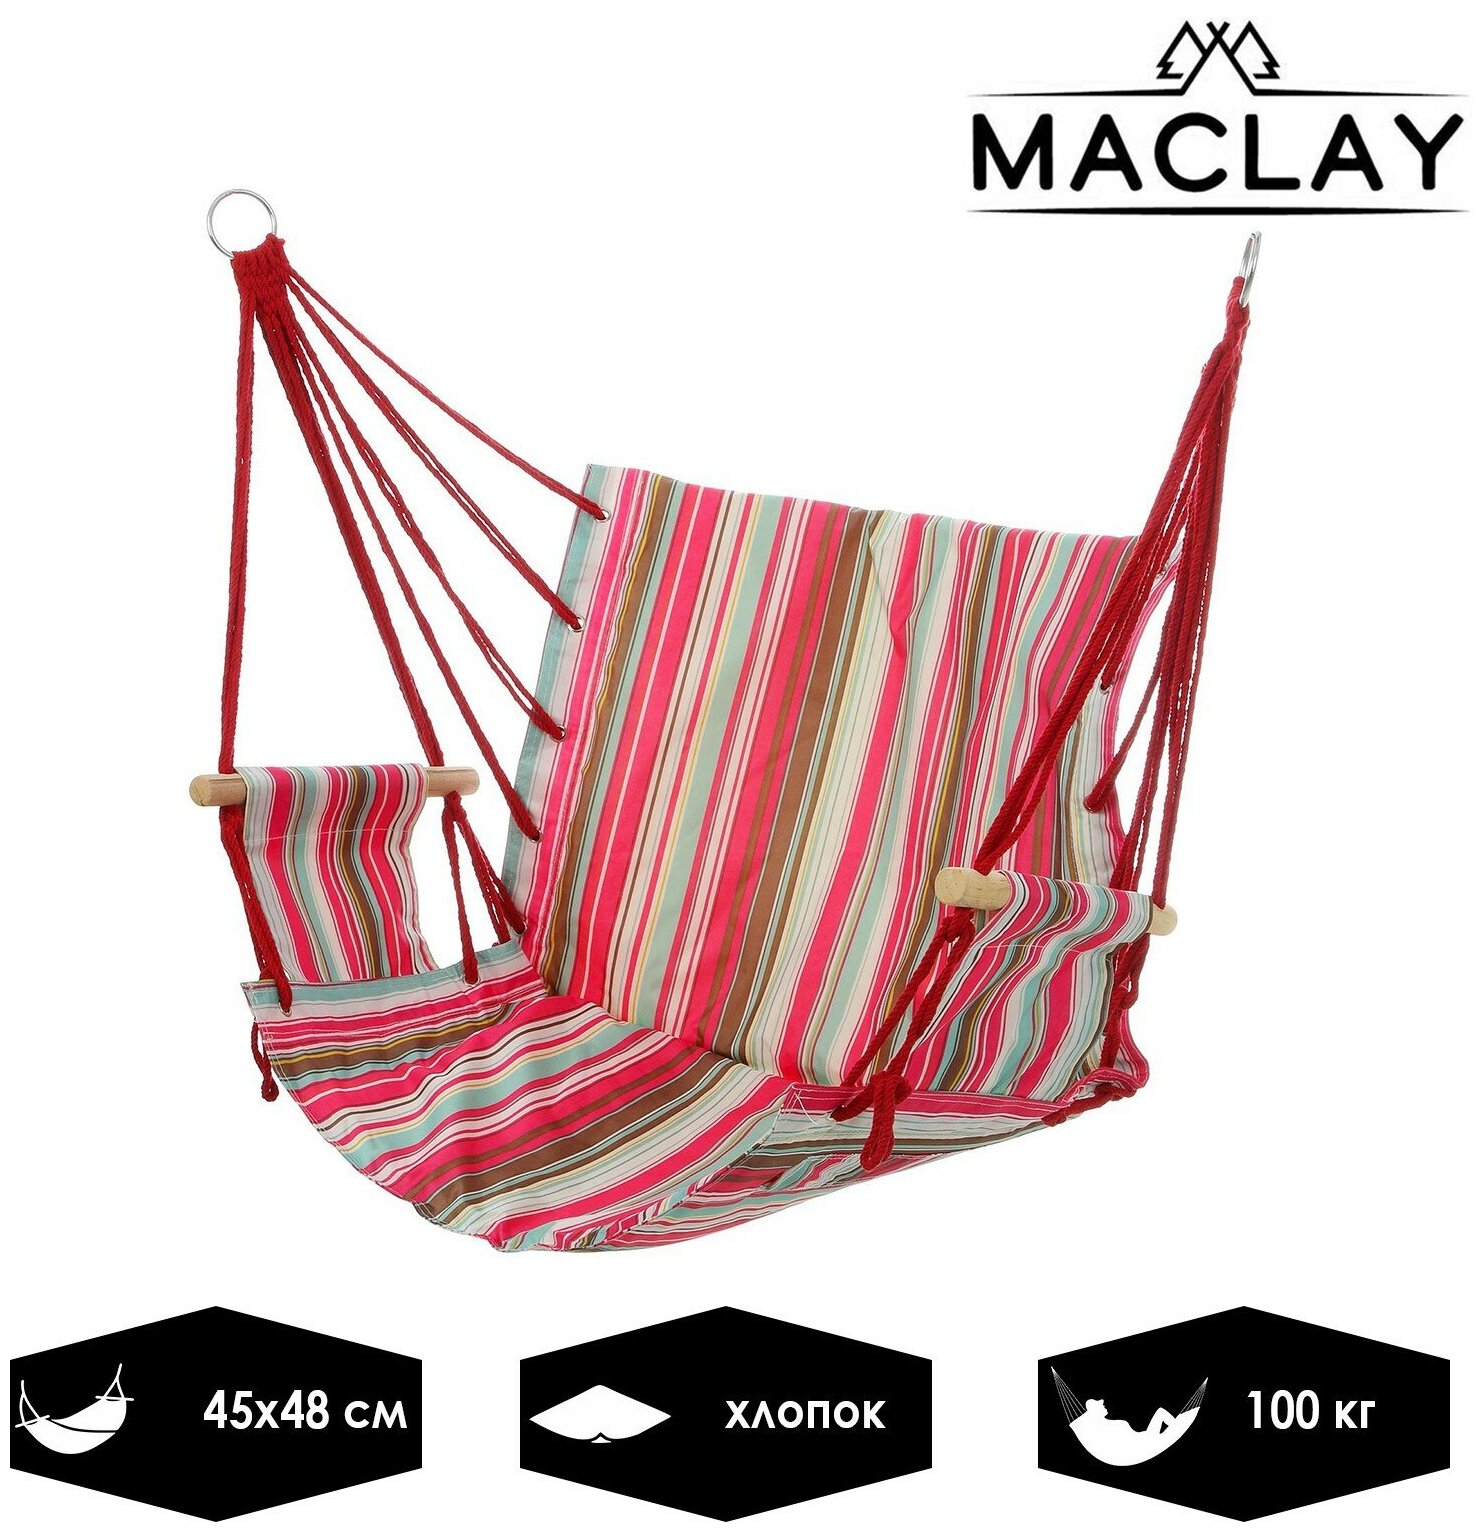 Гамак-кресло Maclay, подвесное, размеры 45 х 48 см, максимальная нагрузка 100 кг, цвет микс